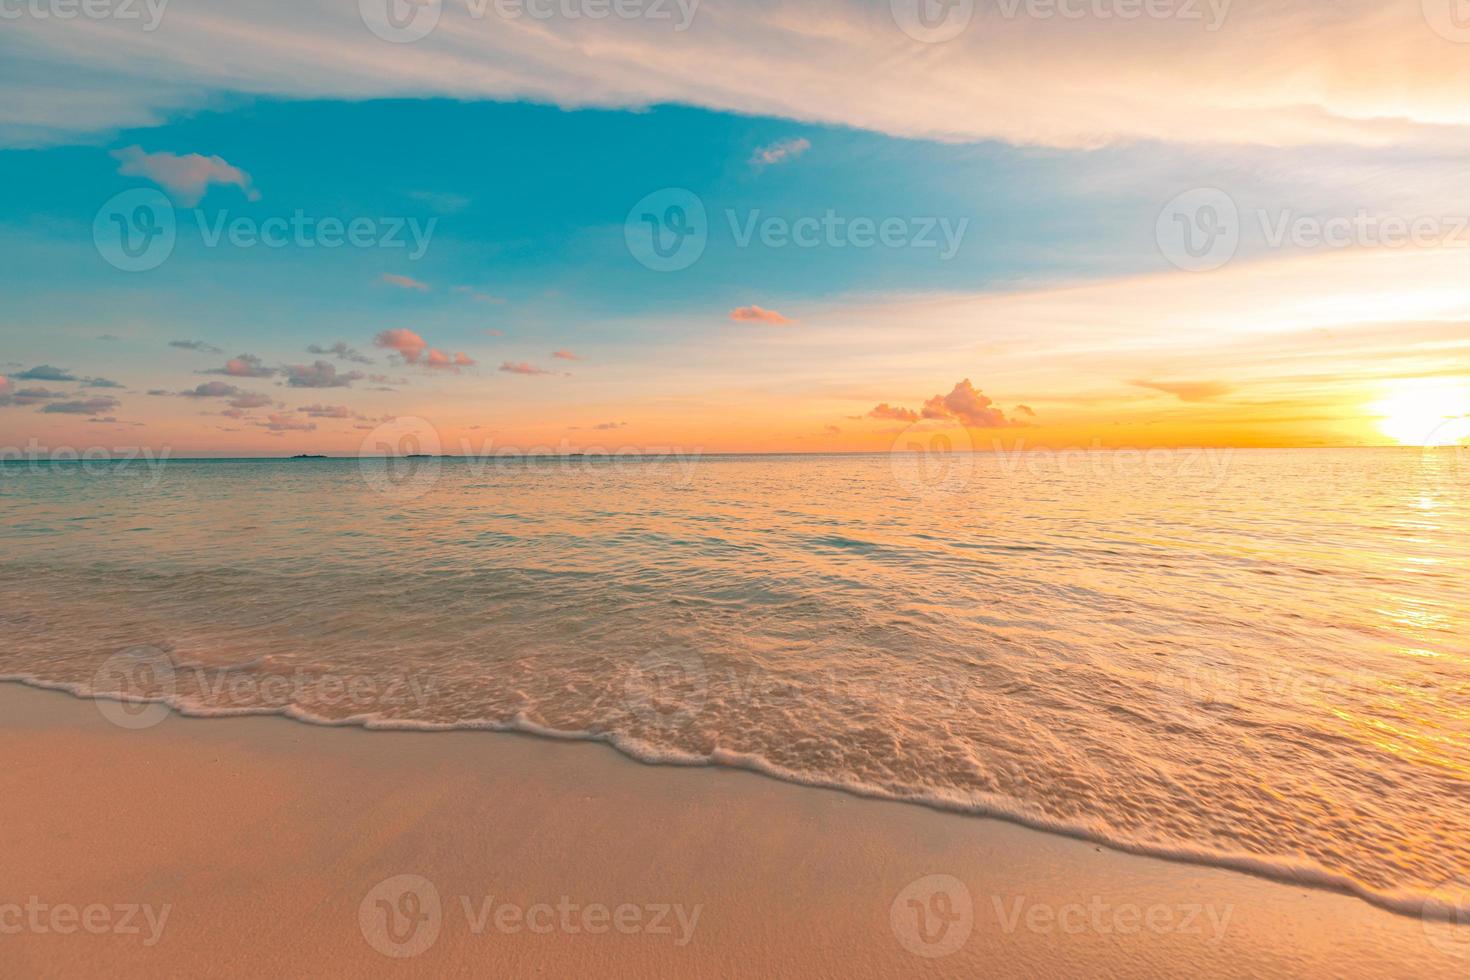 primer plano de la playa de arena de mar. paisaje de playa panorámica. inspirar el horizonte del paisaje marino de la playa tropical. naranja y dorado puesta del sol cielo tranquilidad tranquilo relajante luz del sol verano humor. banner de vacaciones viajes vacaciones foto